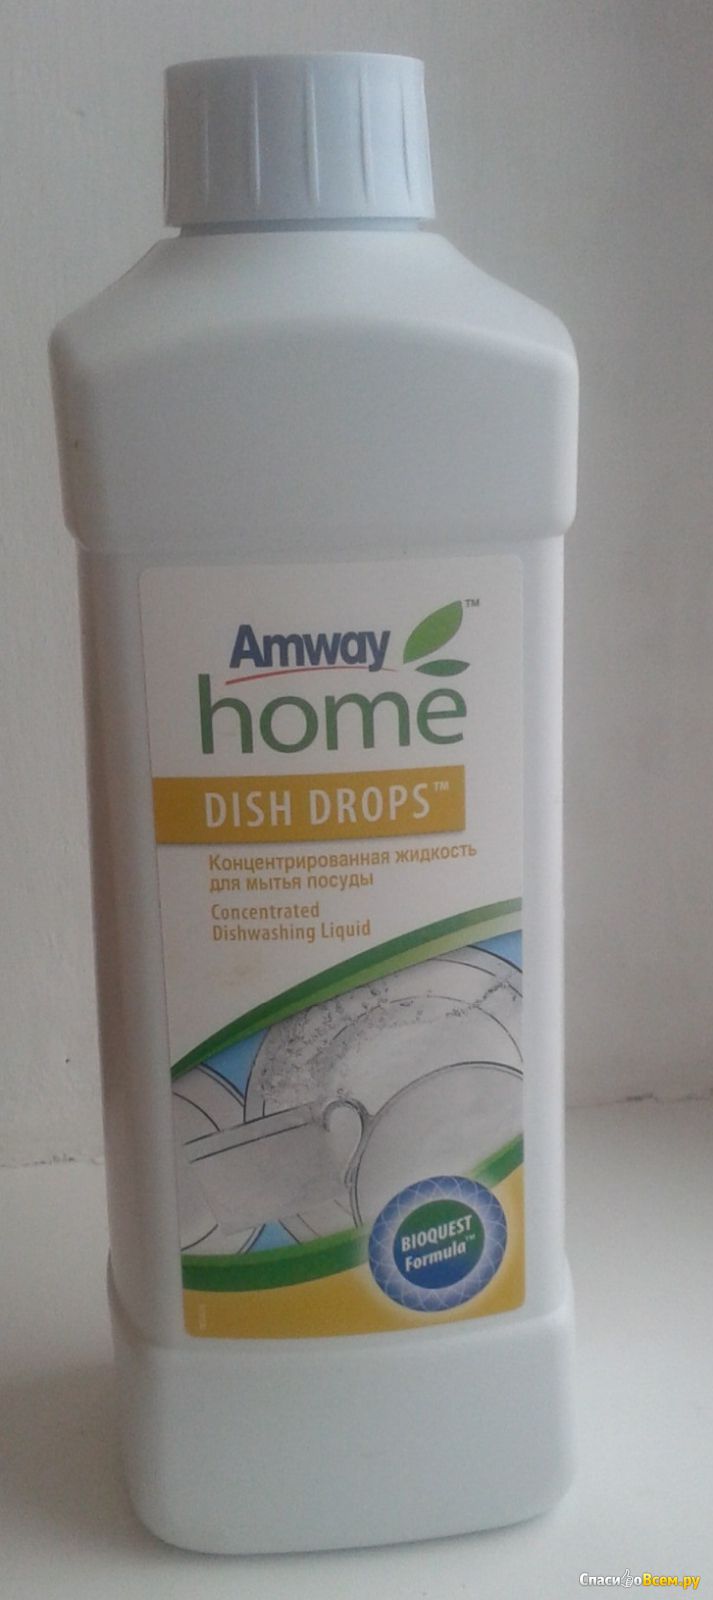 Amway dish drops